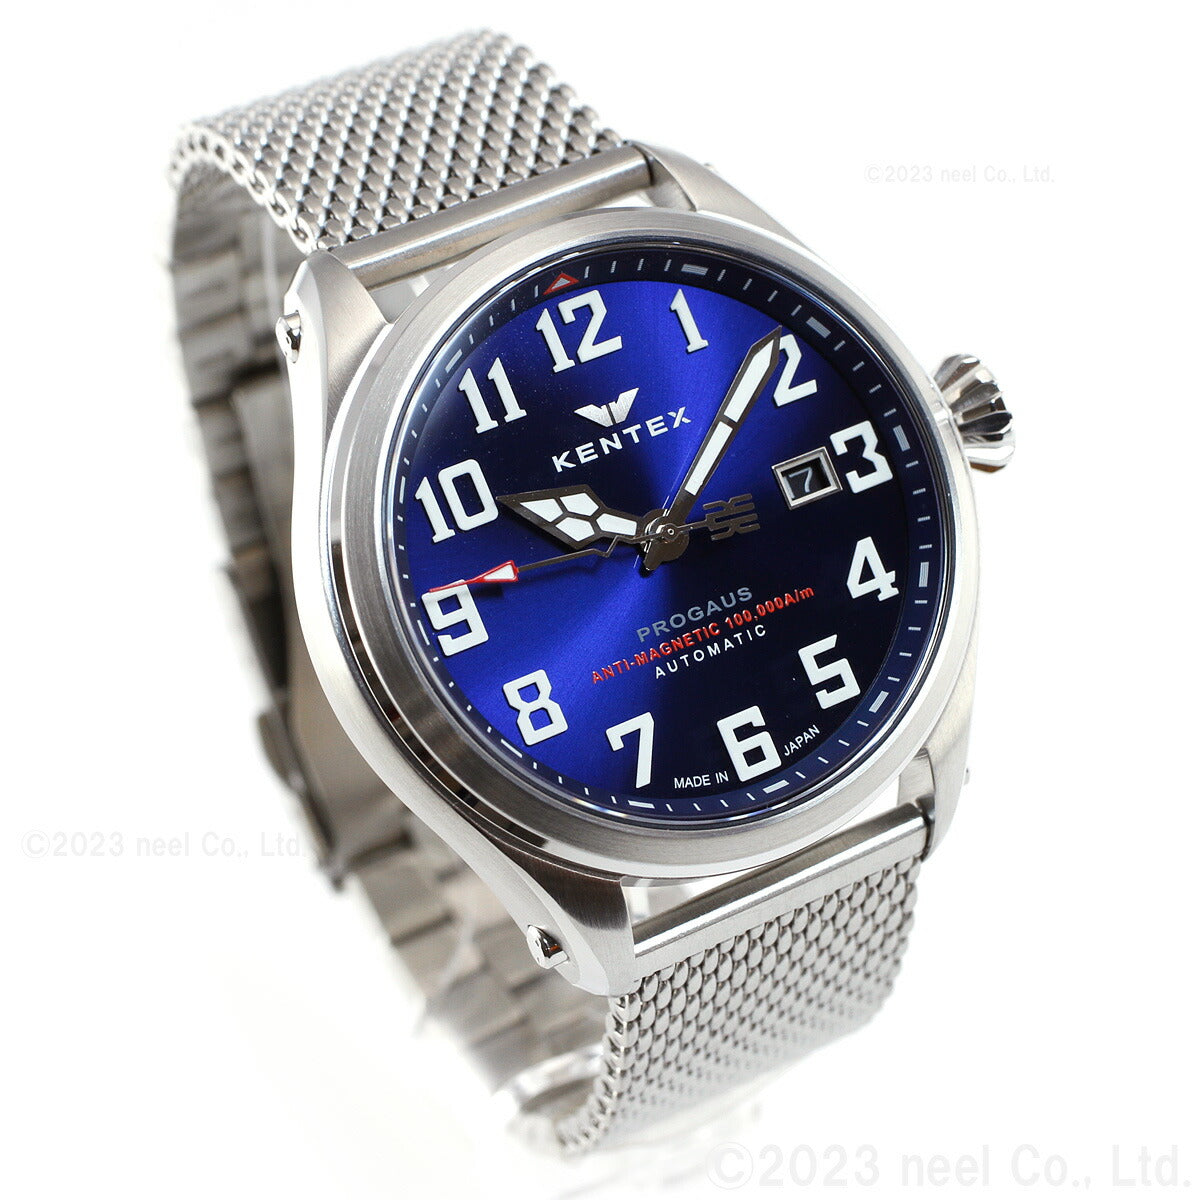 ケンテックス KENTEX 腕時計 時計 メンズ 耐磁時計 自動巻き プロガウス 日本製 S769X-5